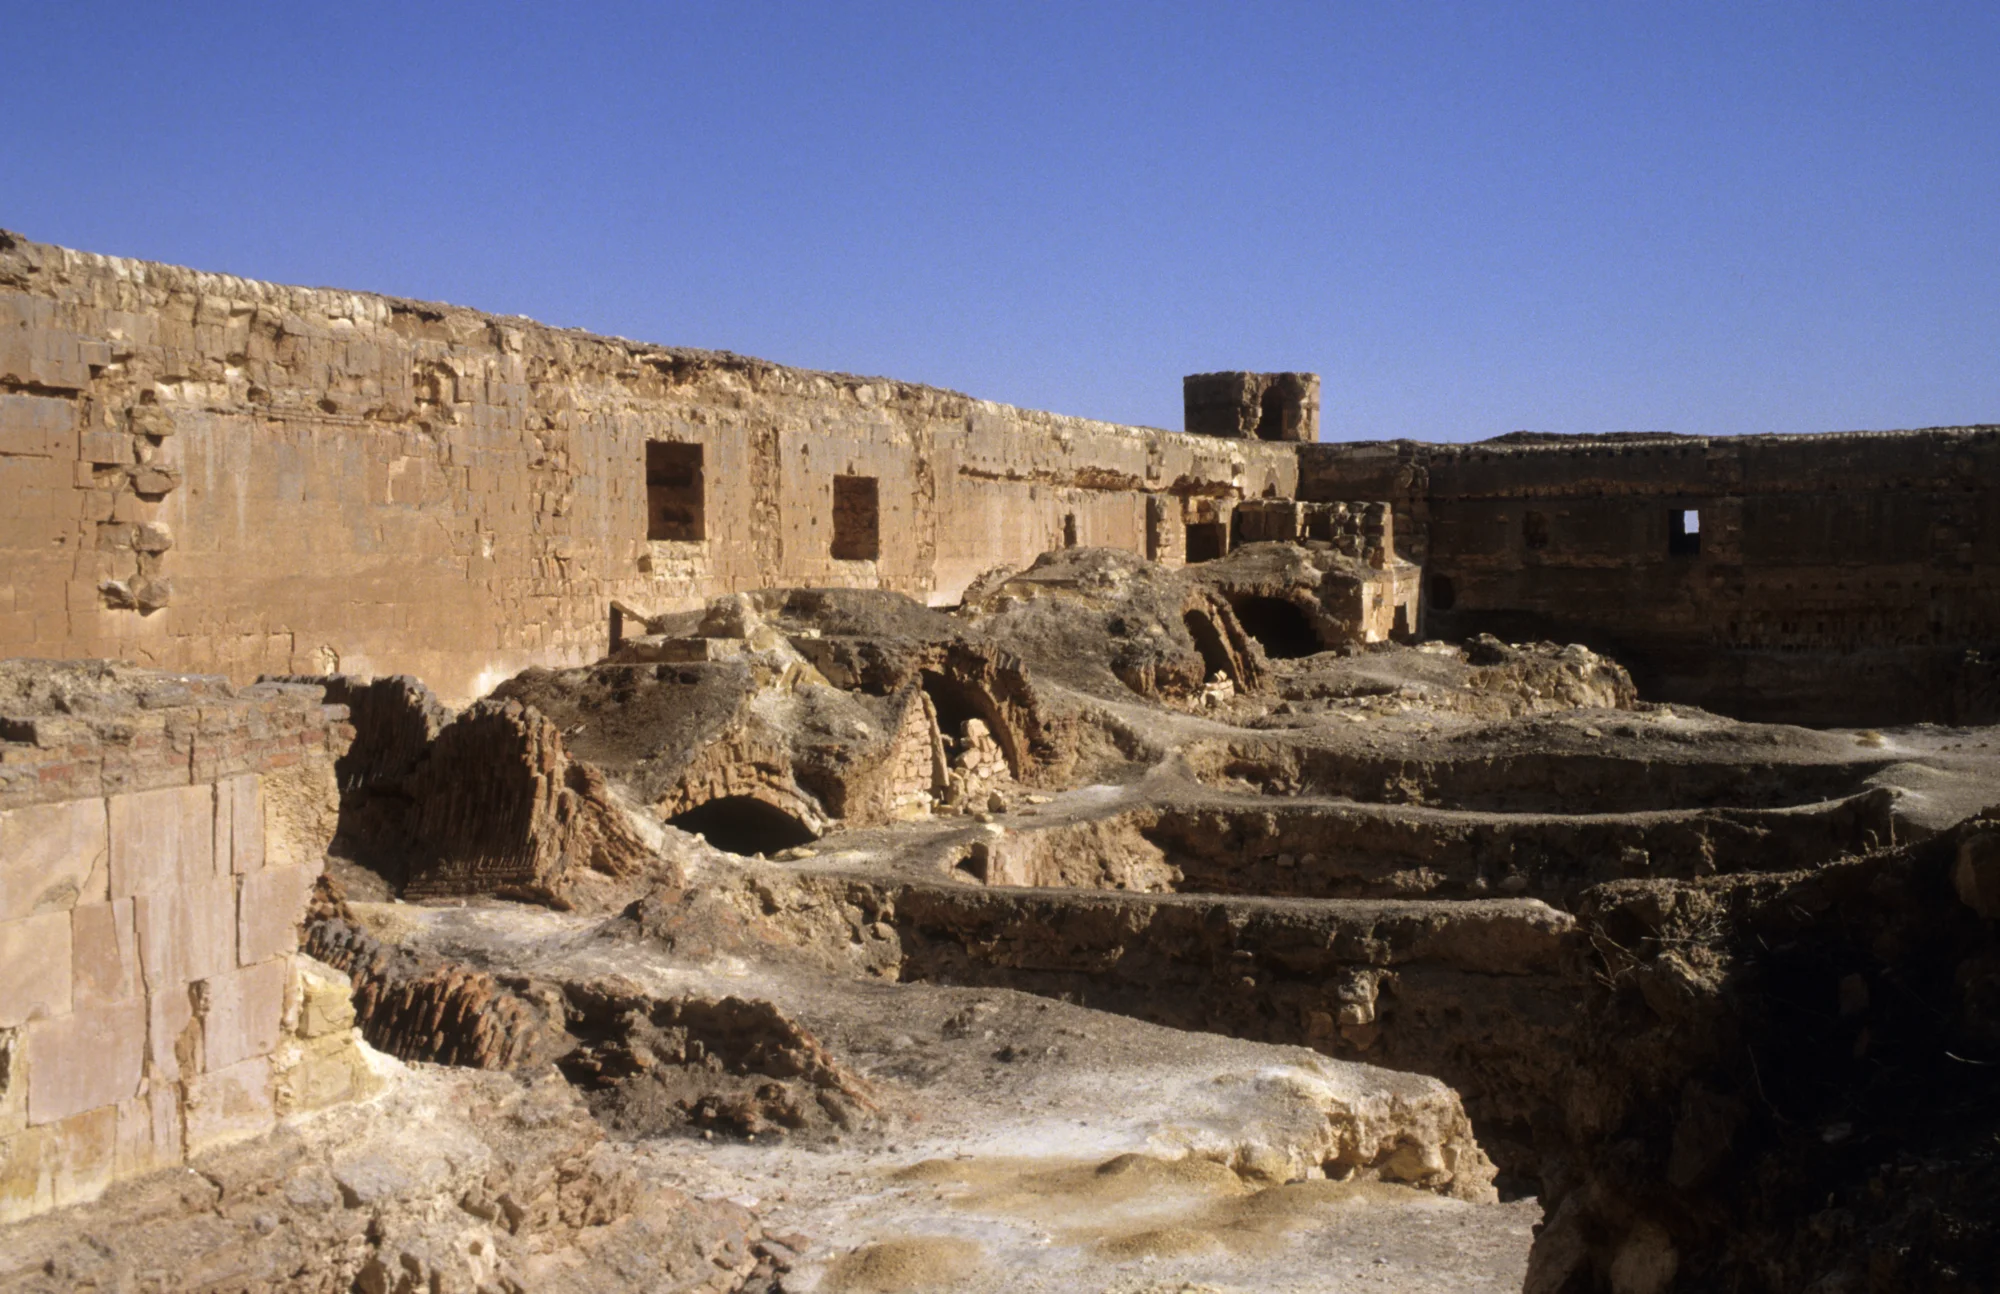 قصر الحير الشرقي، مشهد داخلي للقصر الأموي الصحراوية المبكر يُظهر بقايا غرف مقببة في المجمع الغربي